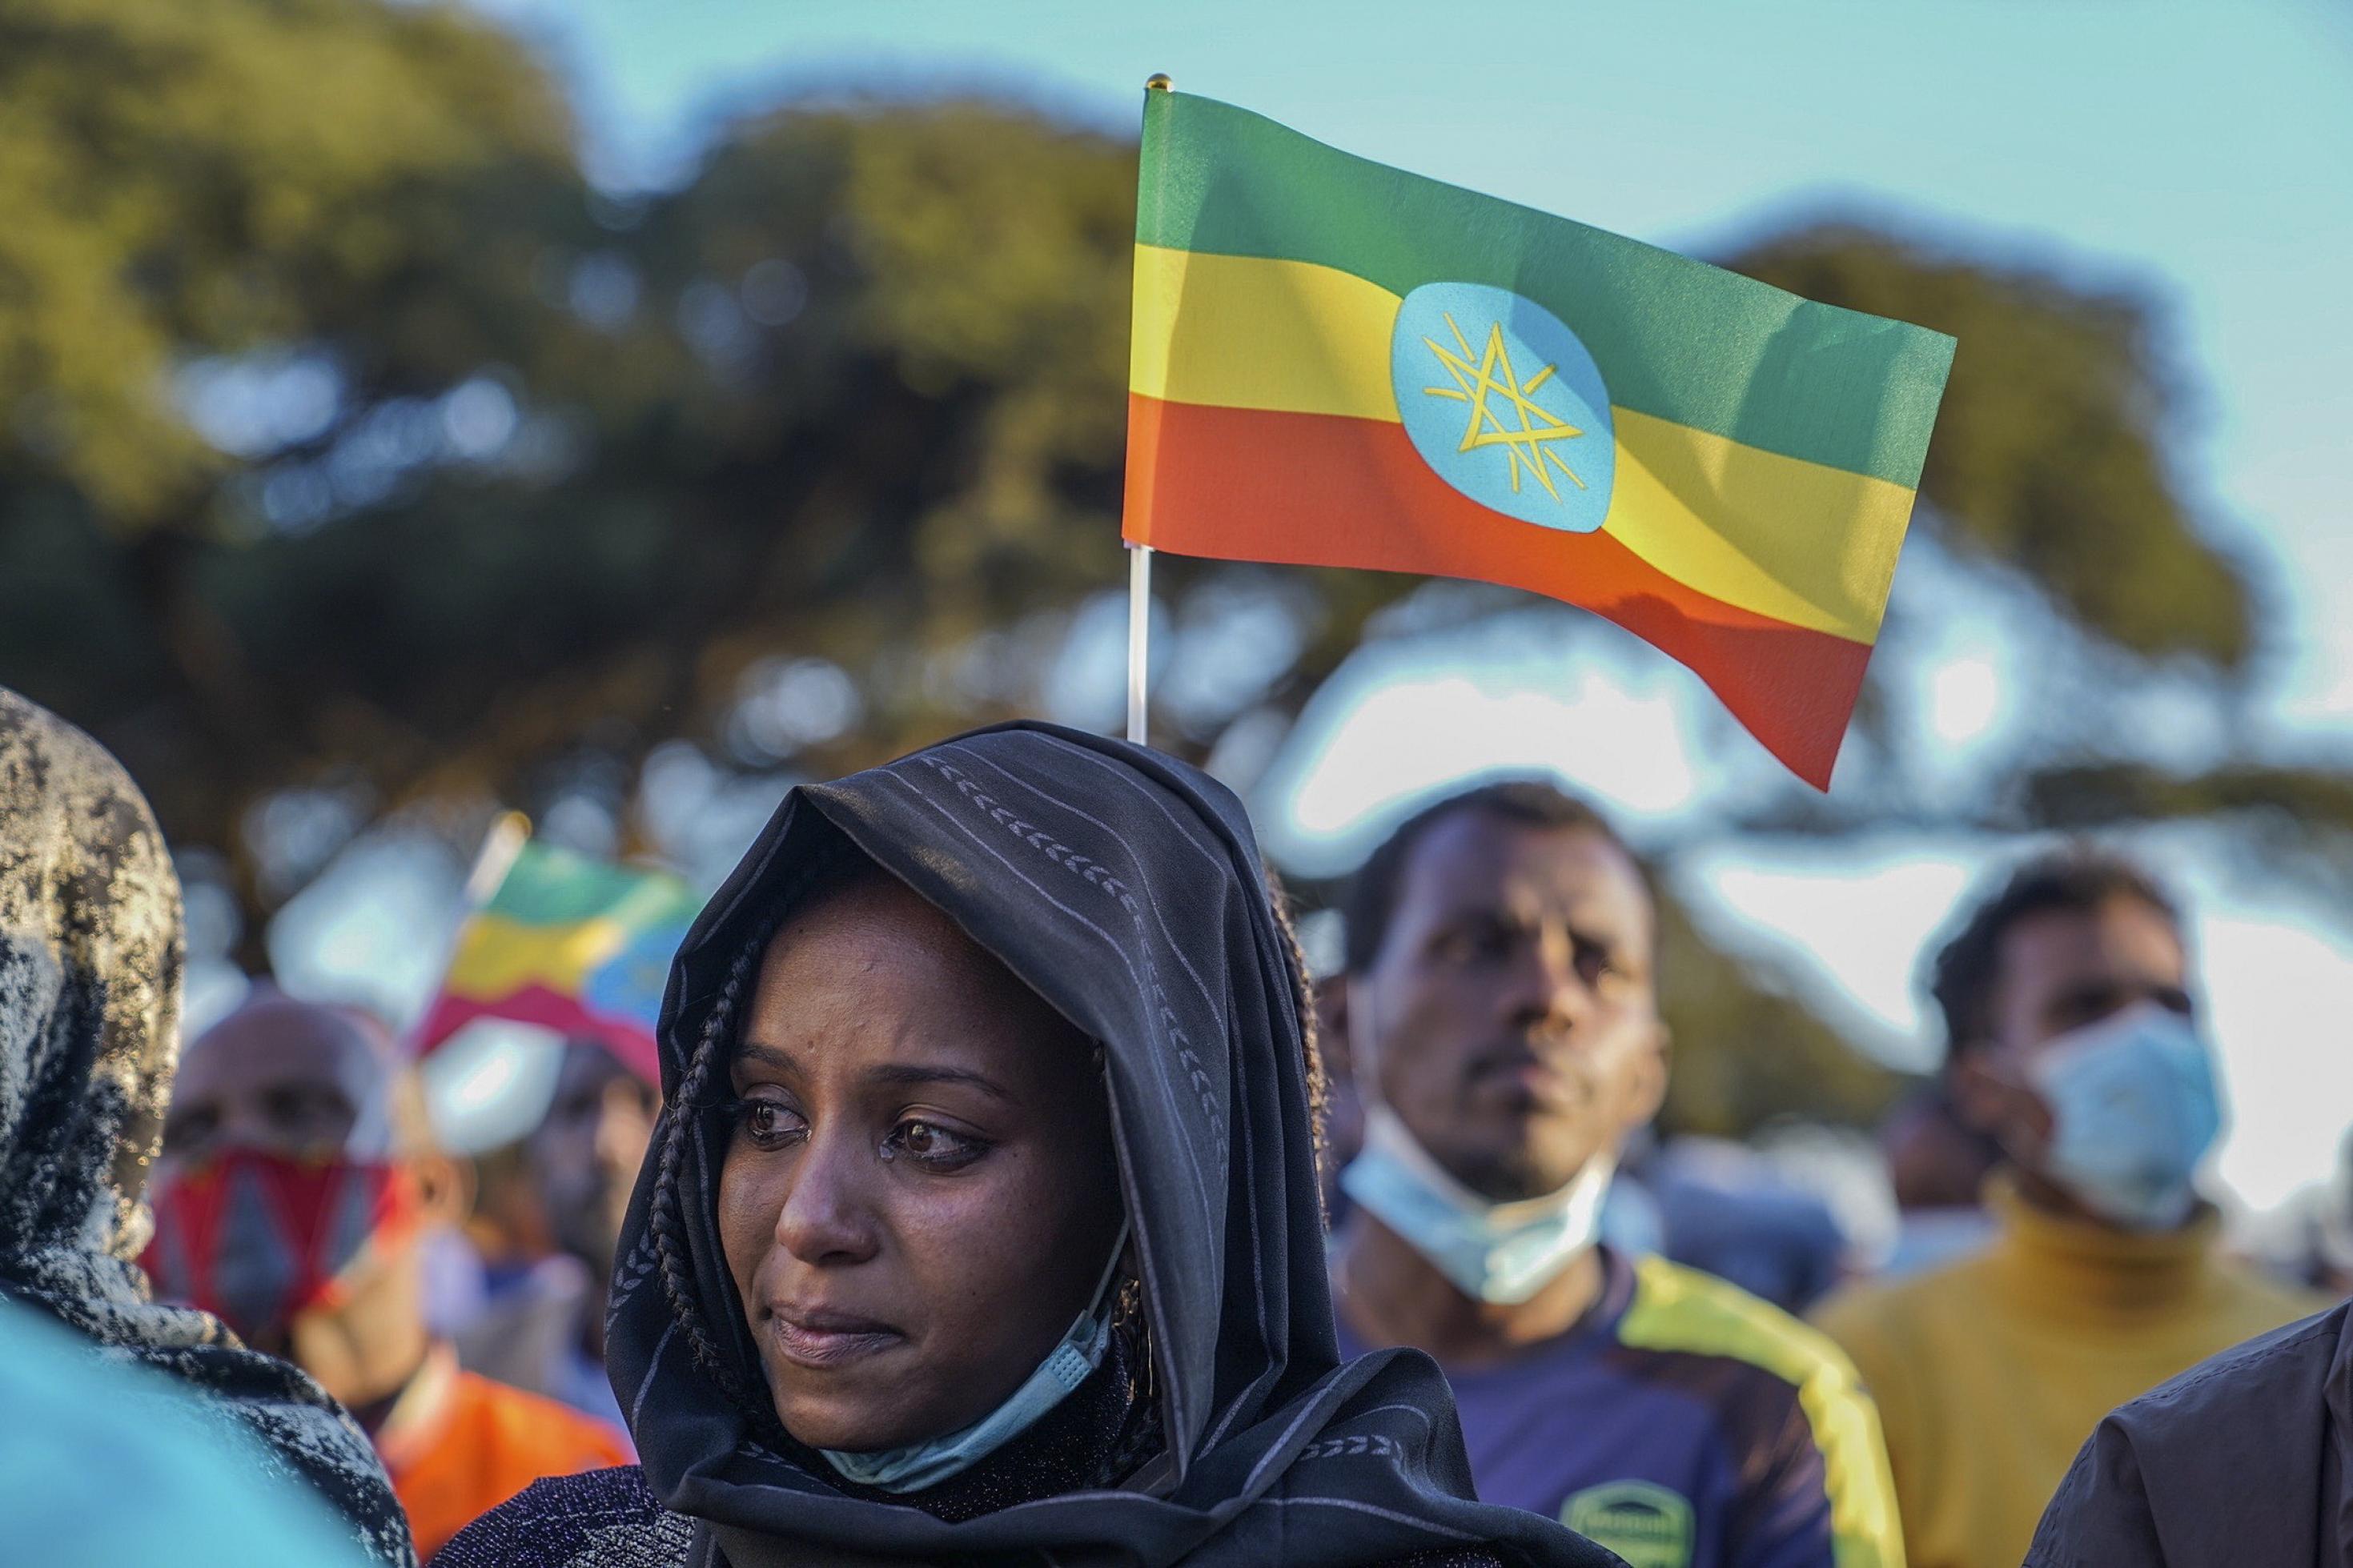 Im Vordergrund ist eine Frau in Großaufnahme zu sehen, sie weint. Im Hintergrund eine äthiopische Flagge: Grün-gelb-rot quer gestreift, in der Mitte das aktuelle Hoheitszeichen, ein strahlendes Pentagramm. Dahinter weitere Demonstrierende.